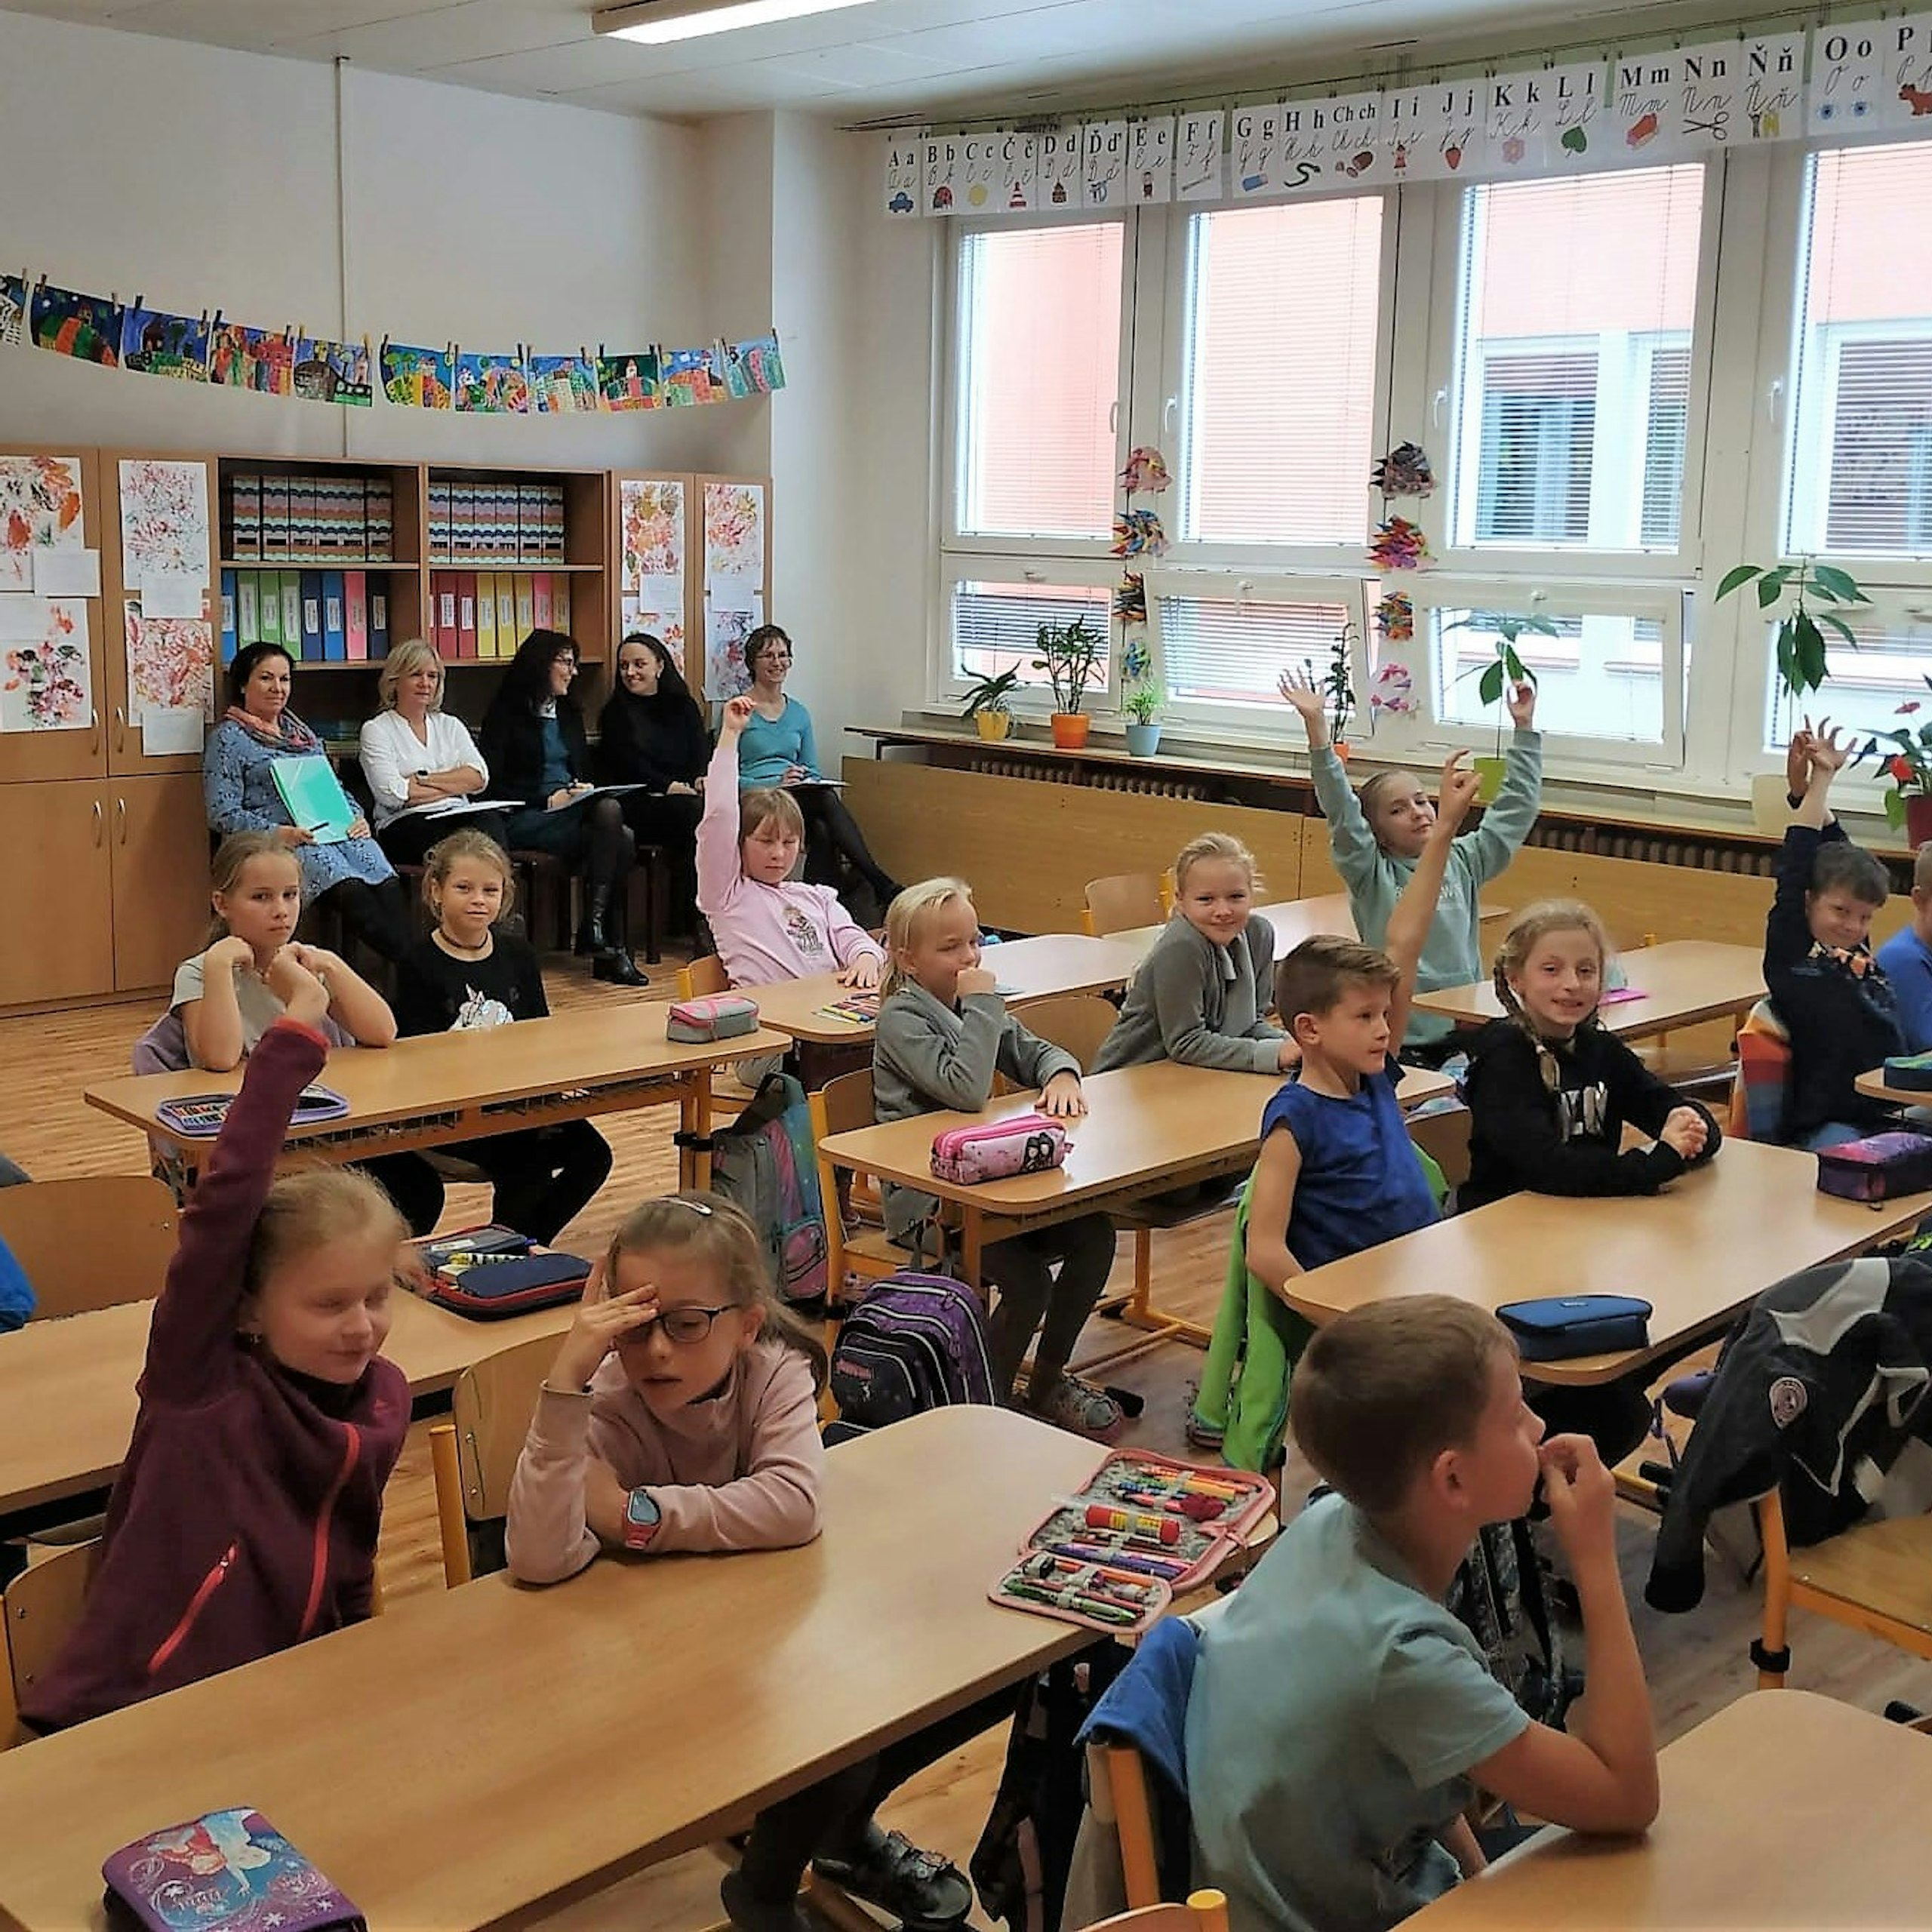 Základní škola ve Ždírci nad Doubravou přivítala 47 pedagogů z okolních škol